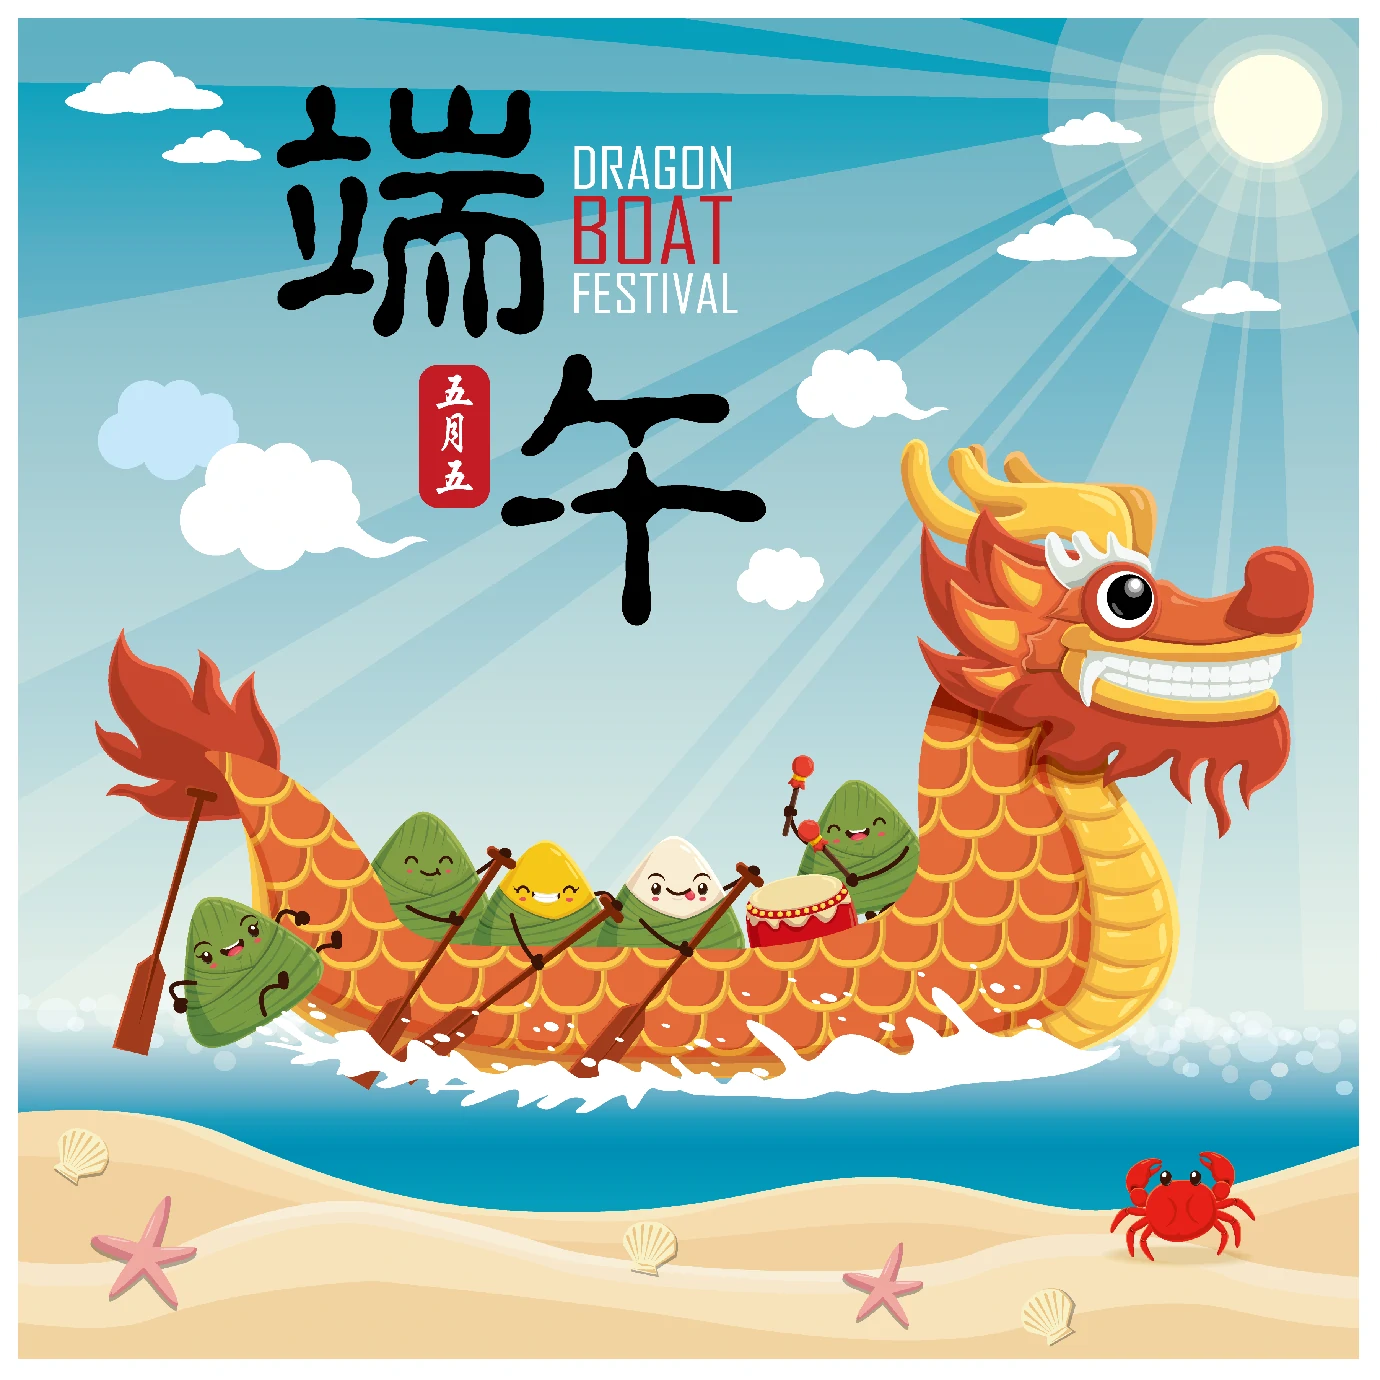 中国传统节日卡通手绘端午节赛龙舟粽子插画海报AI矢量设计素材【028】